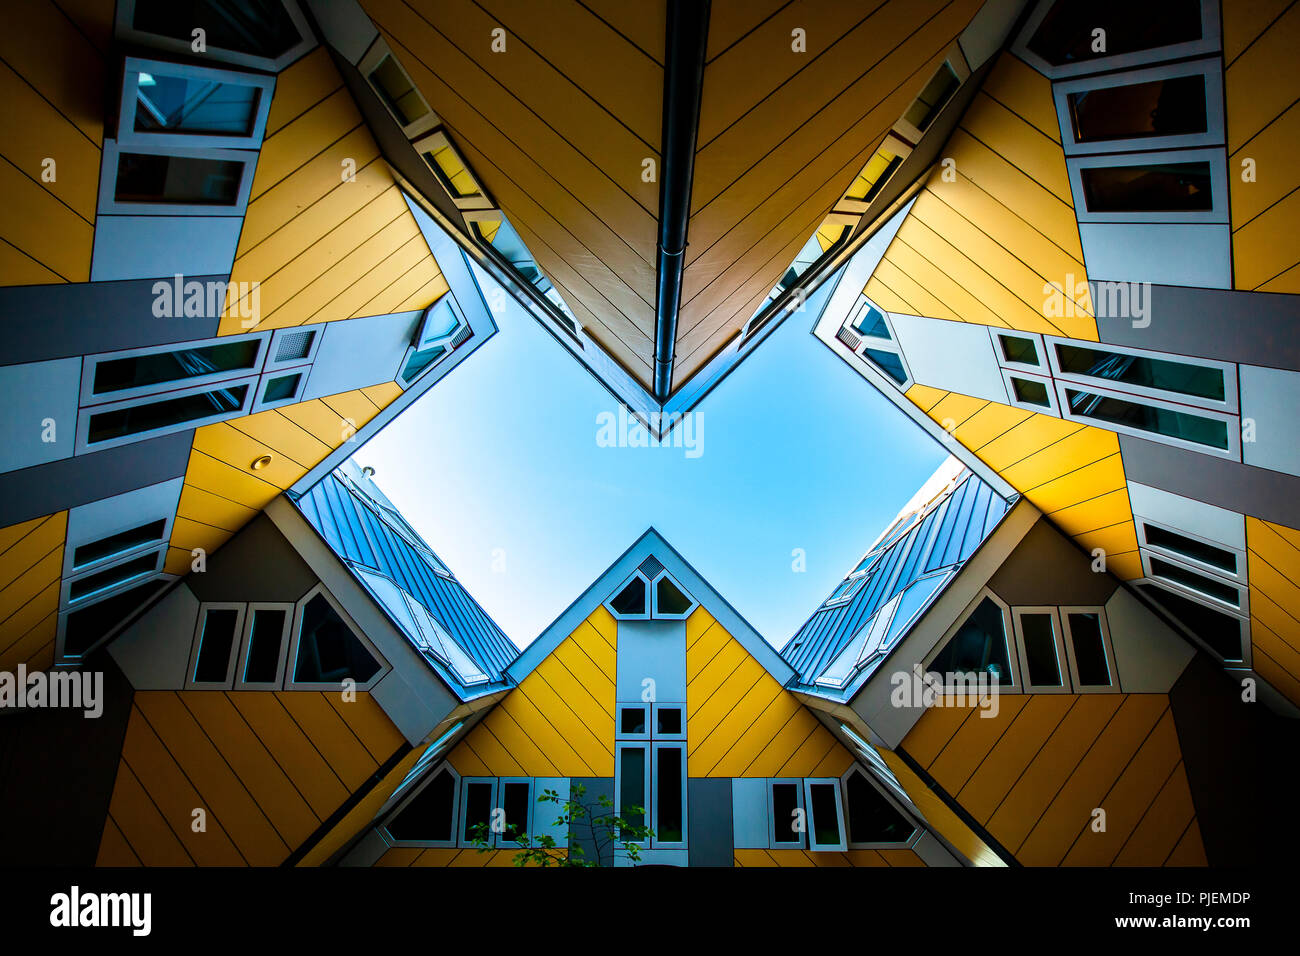 Célèbre toit unique détails avec ciel bleu, architecture Maison Cube par Piet Blom Banque D'Images